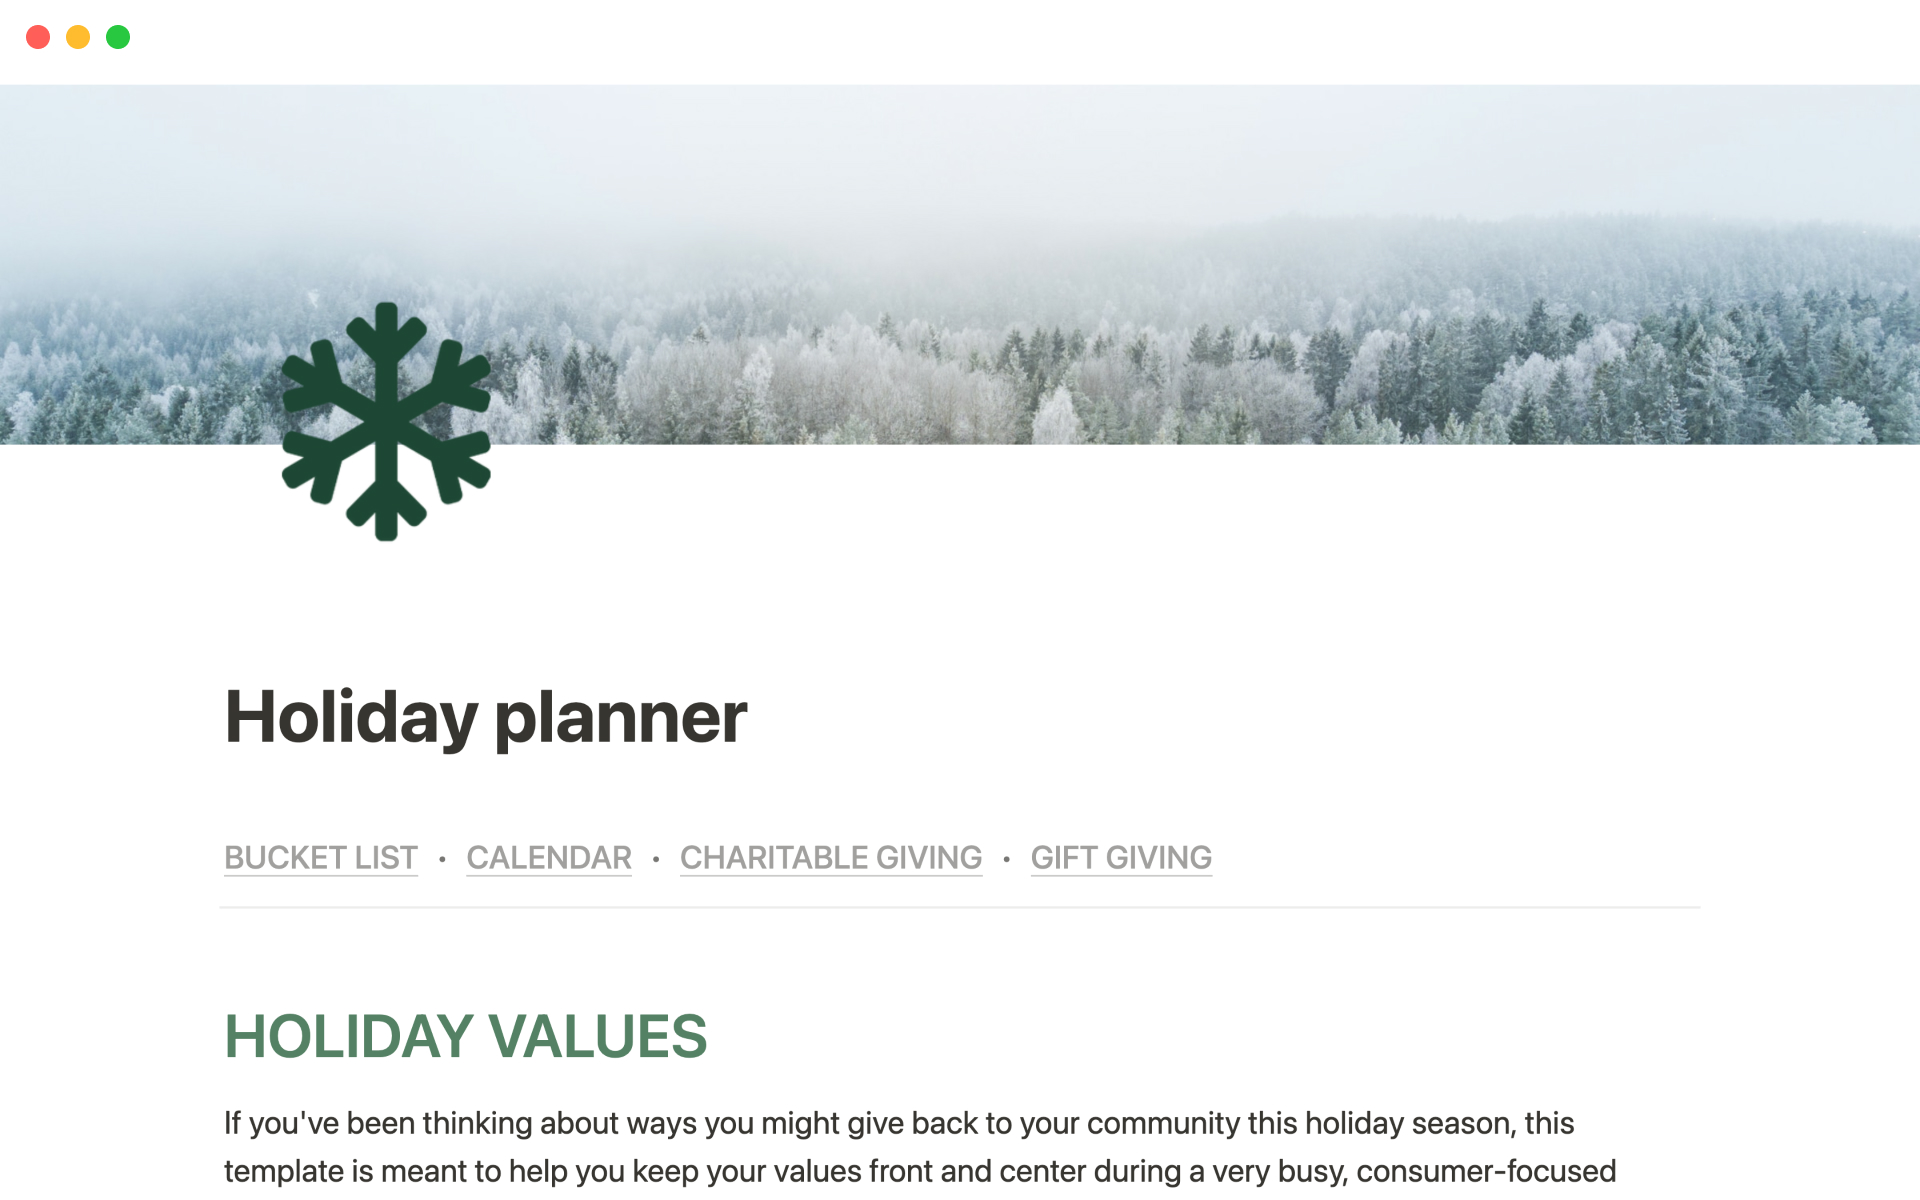 Aperçu du modèle de Holiday planner